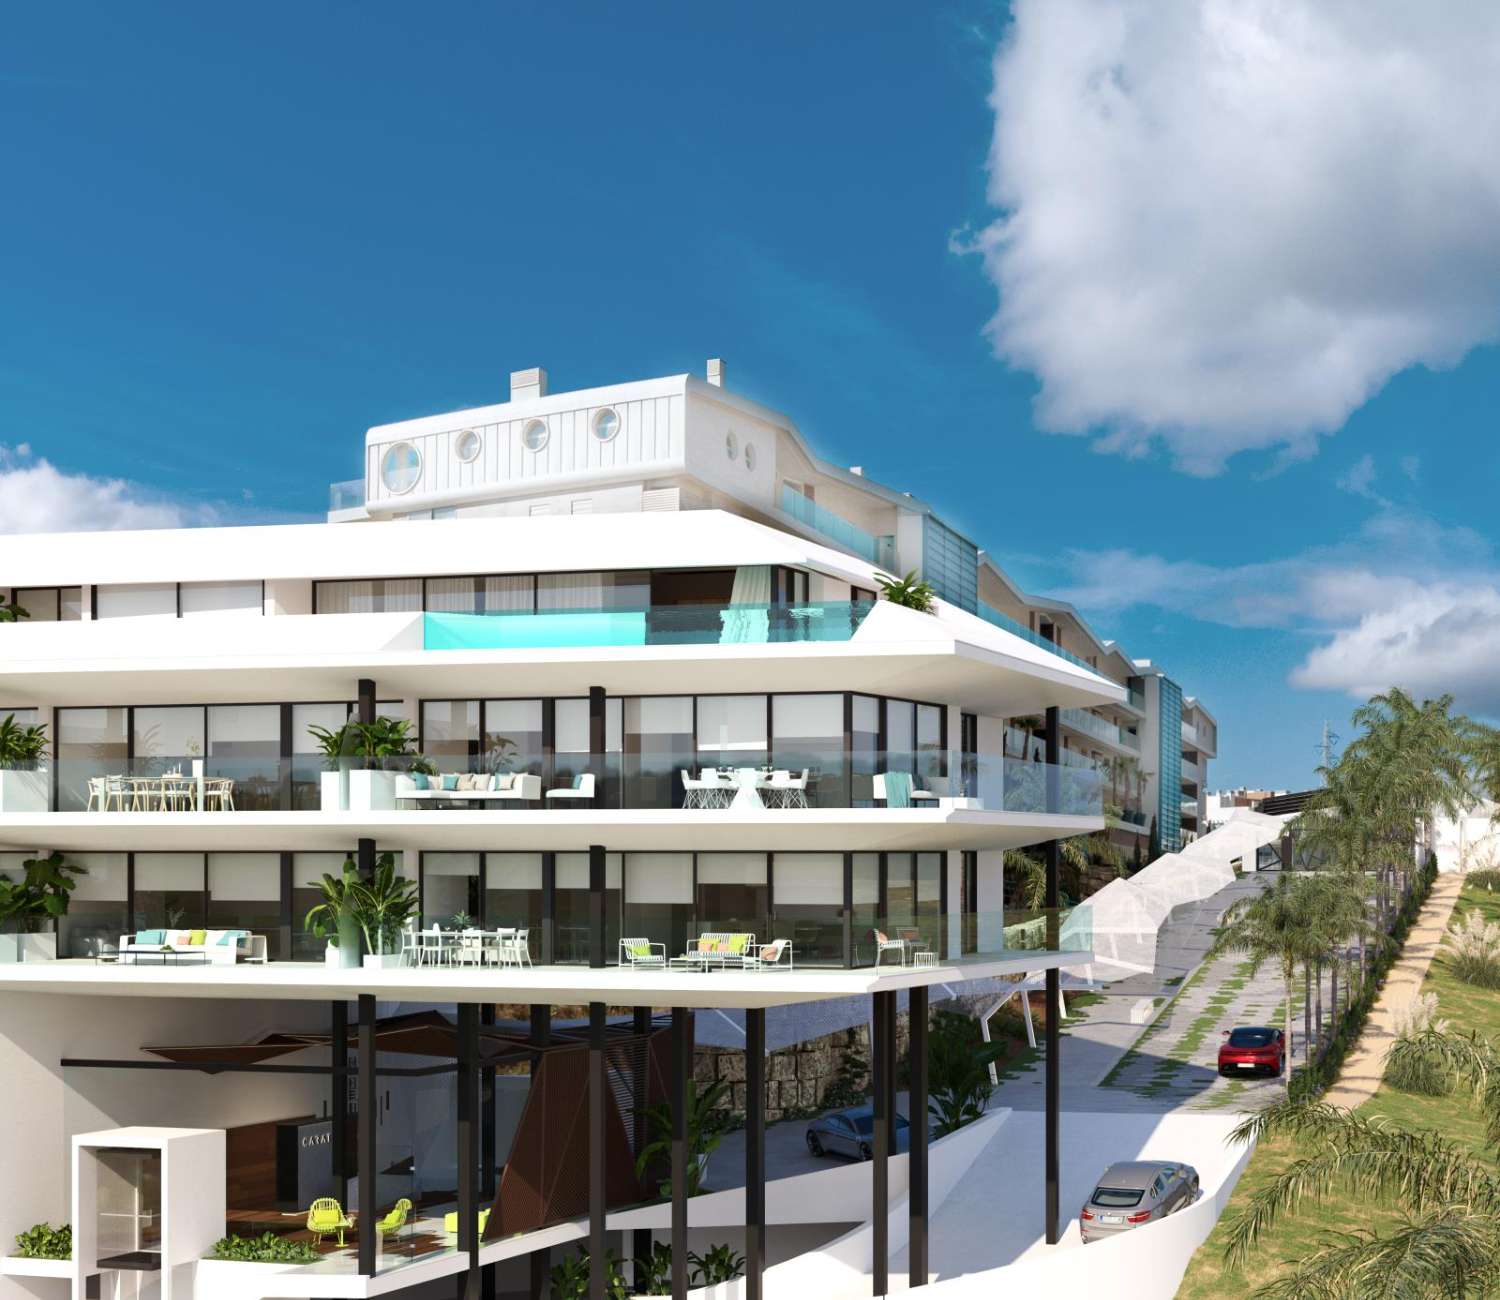 Spectaculair 3 slaapkamer penthouse met luxe kwaliteiten en uitzicht op zee, terras van 60 meter